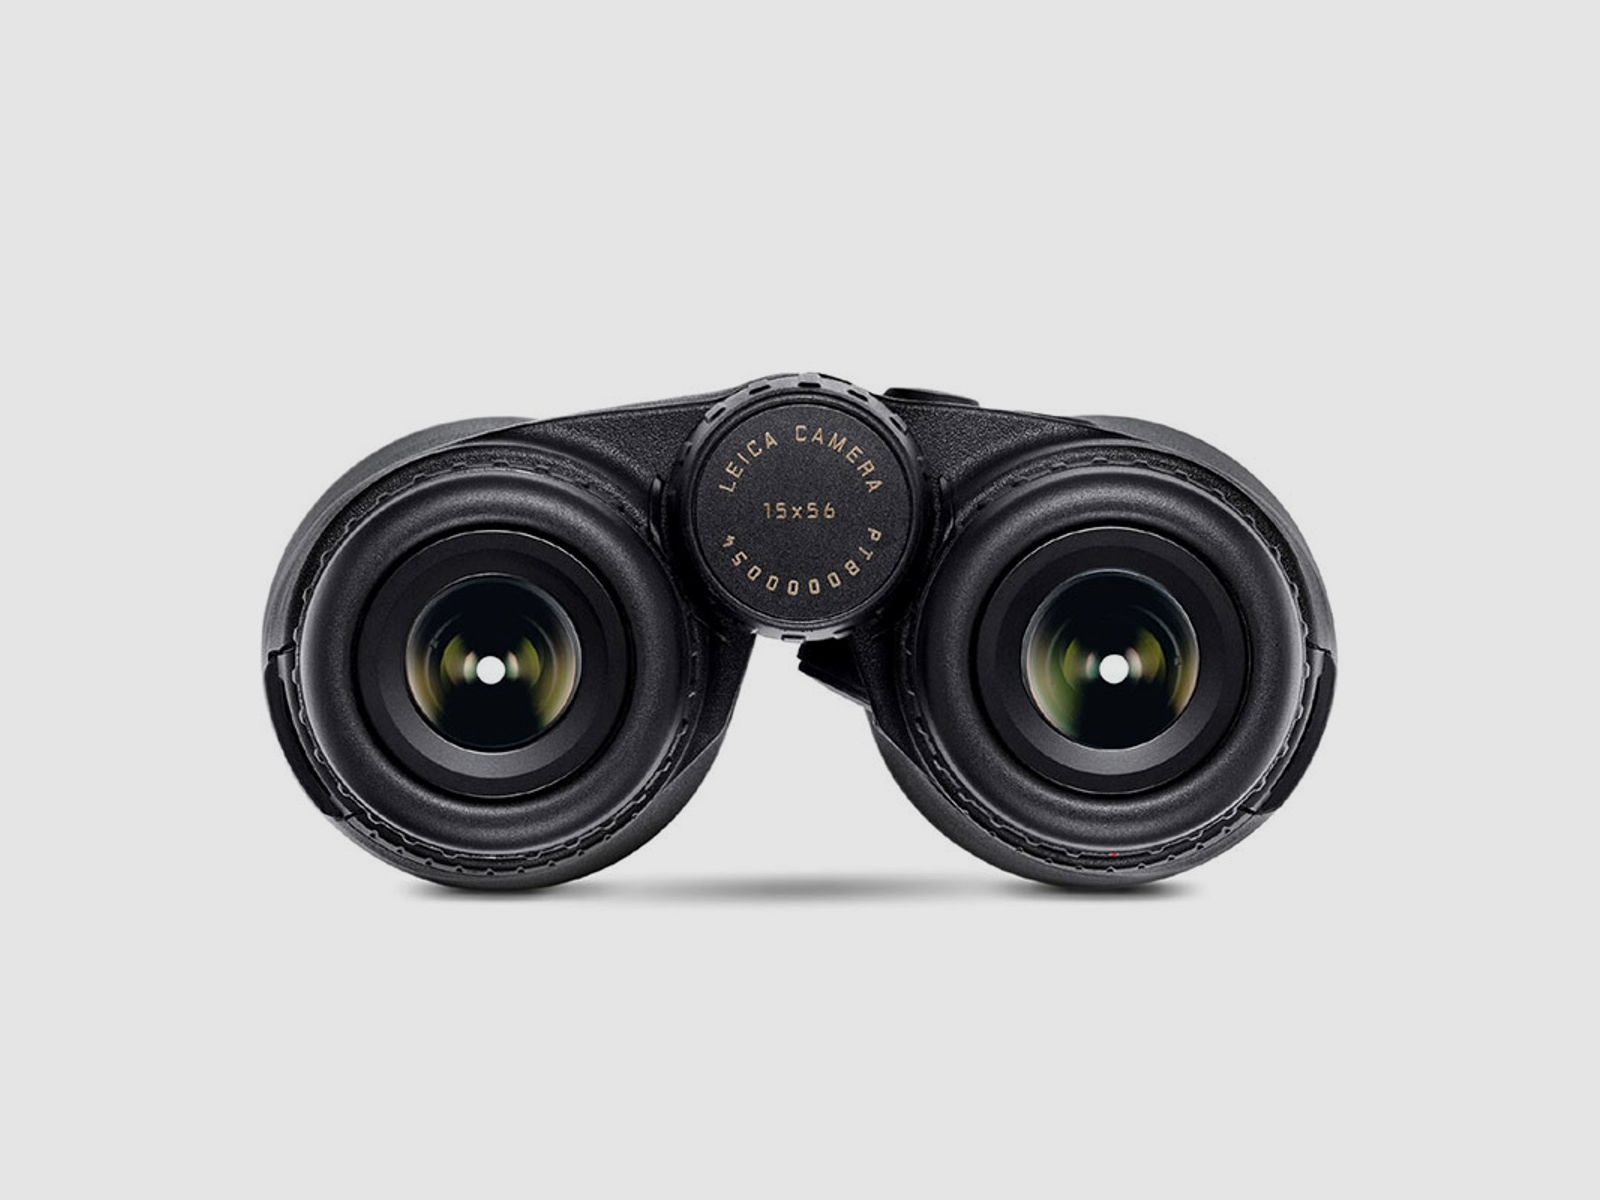 Leica Fernglas Geovid R 15x56